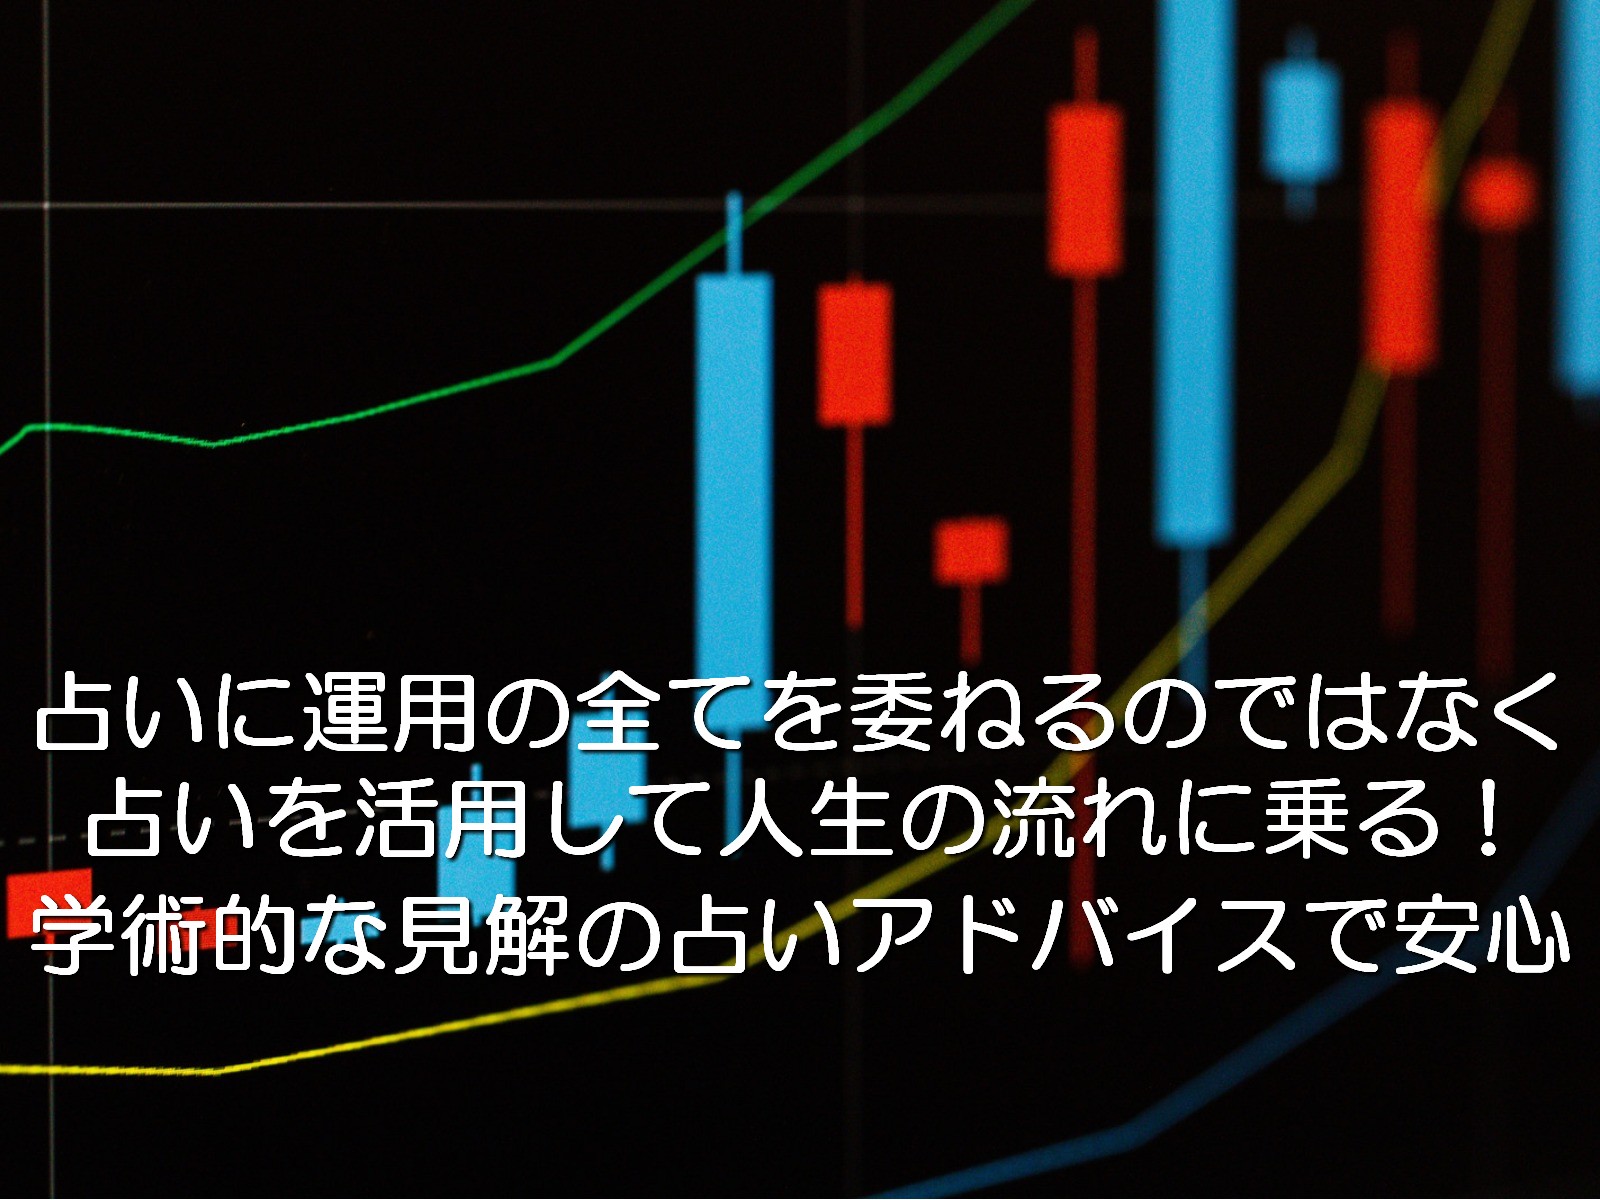 東京渋谷で資産運用占いなら『占いの観点でアドバイス』ができる占い館BCAFE（ビーカフェ）の占い師にお任せ！学術的（統計学）な占いという観点から、アナタの性格や運勢を分析し、丁寧にアドバイスをしていき